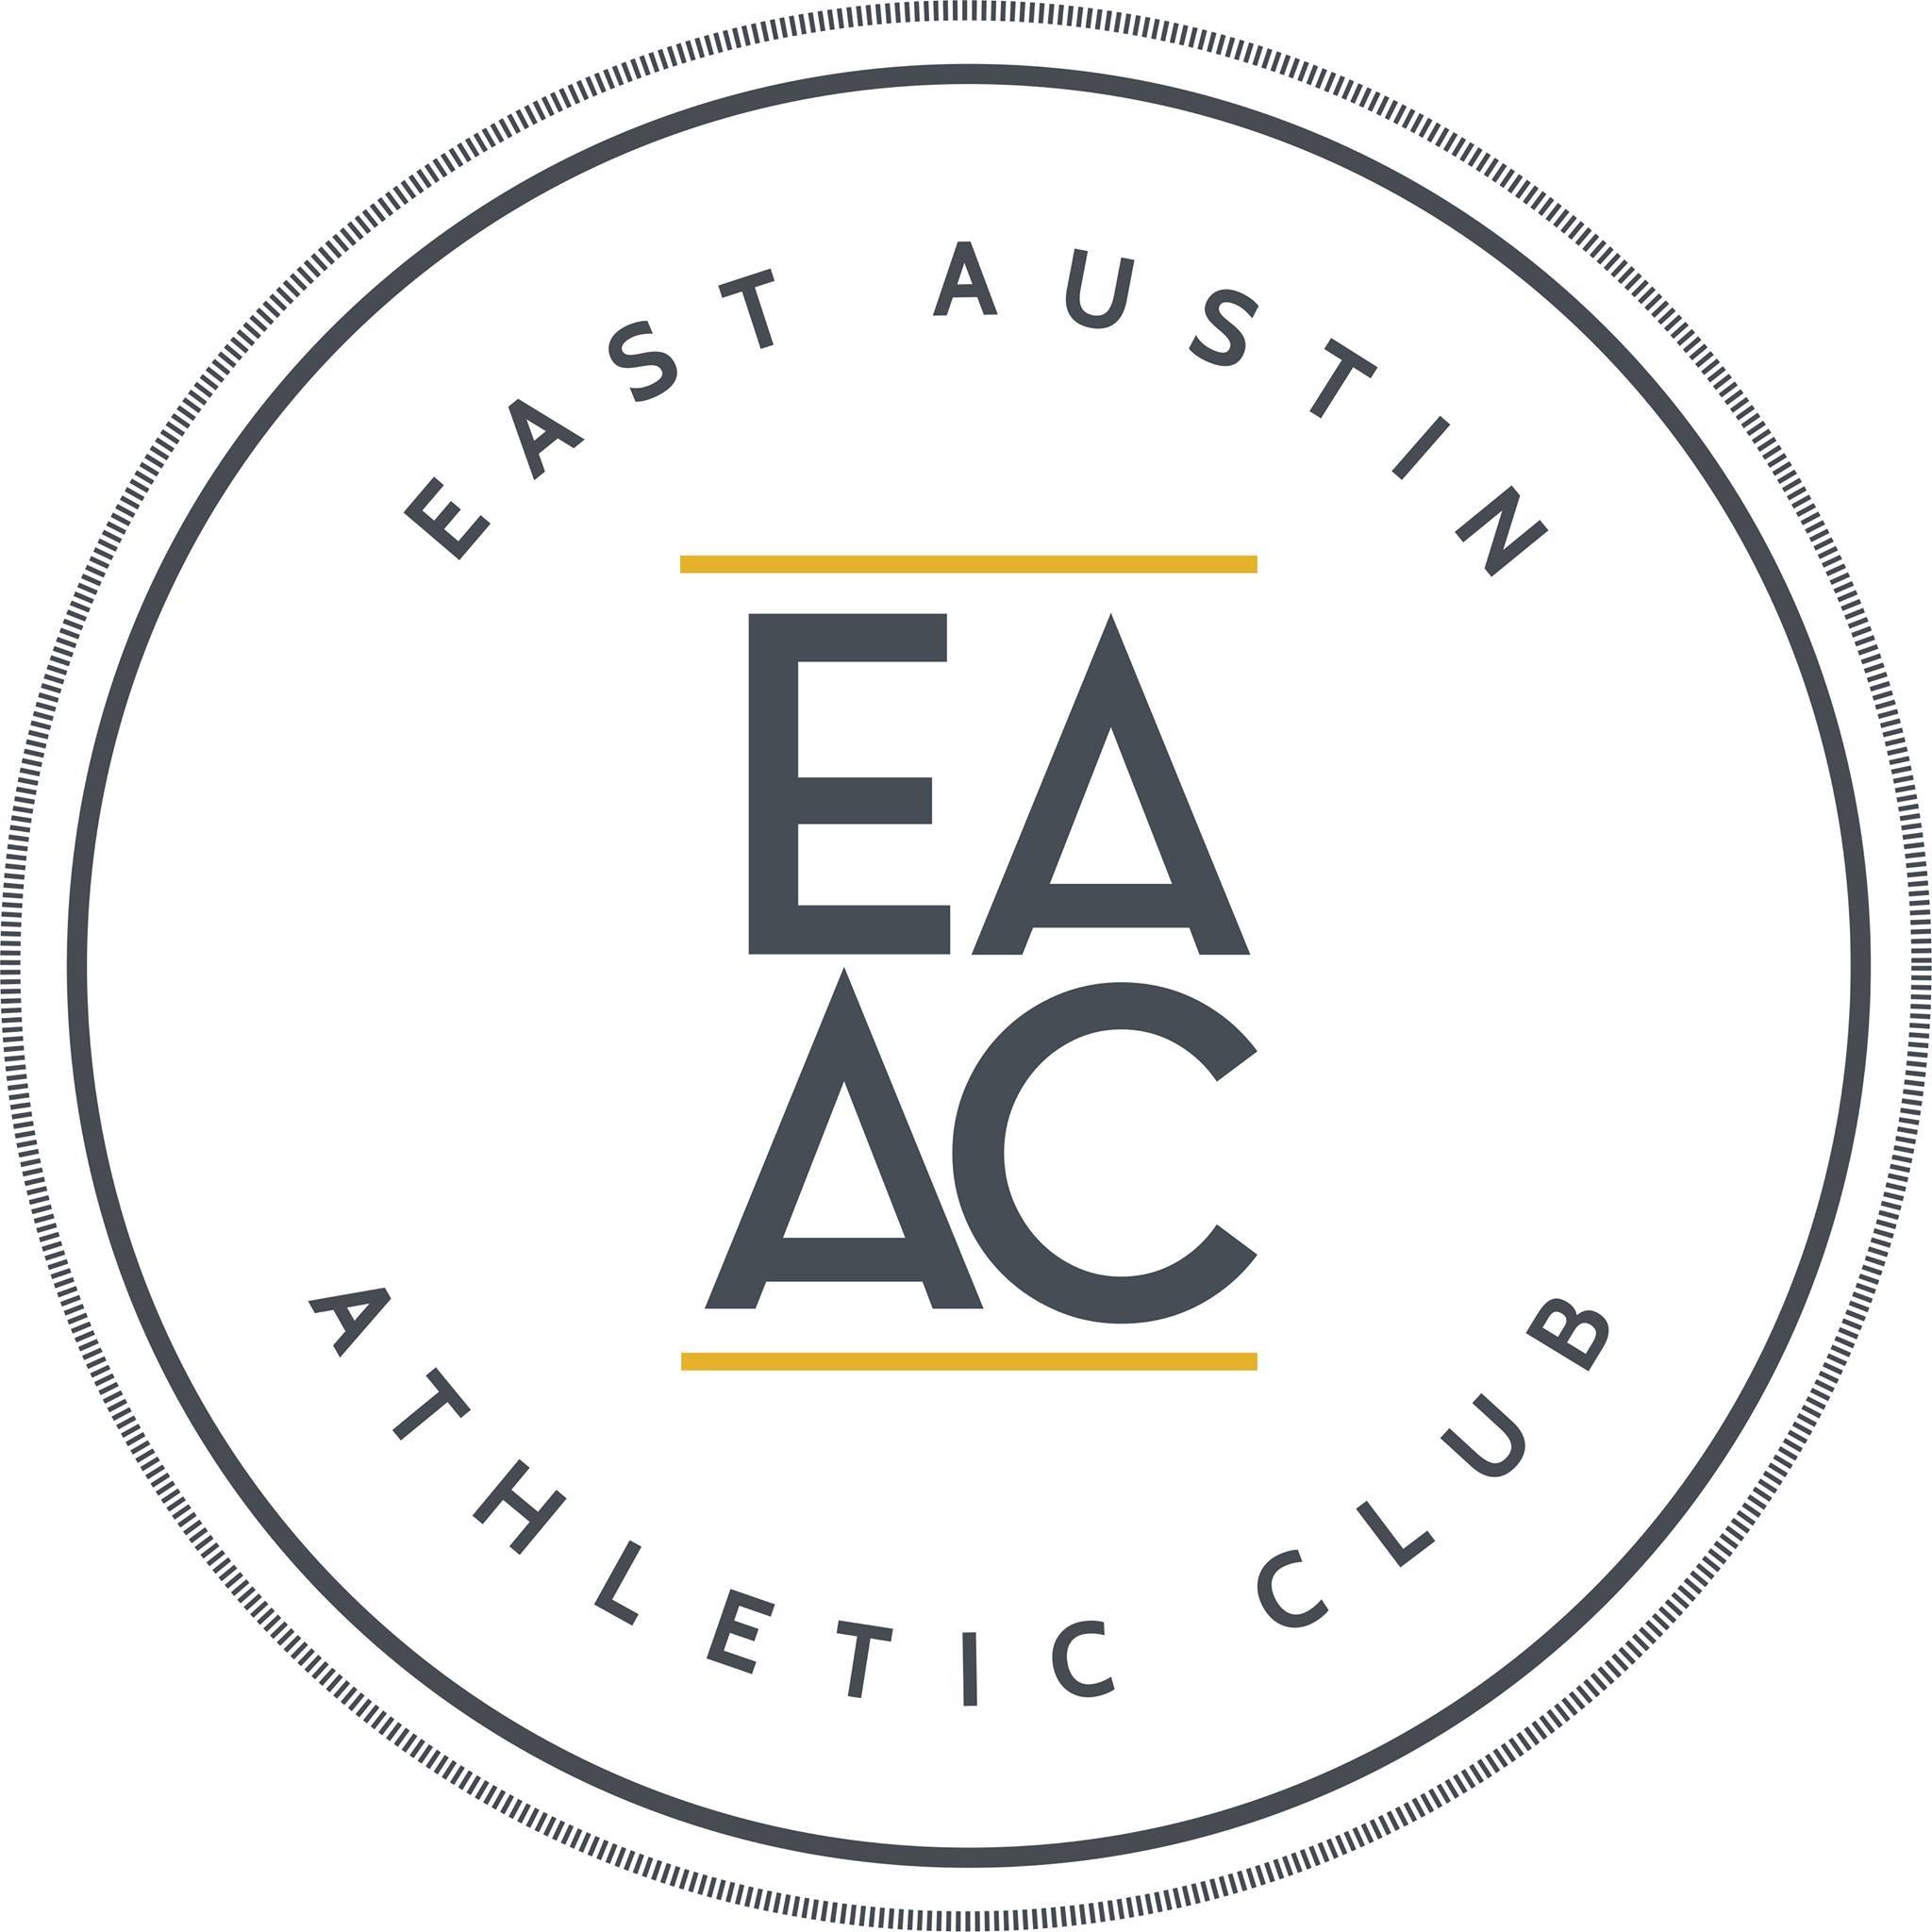 Club Atlético del Este de Austin